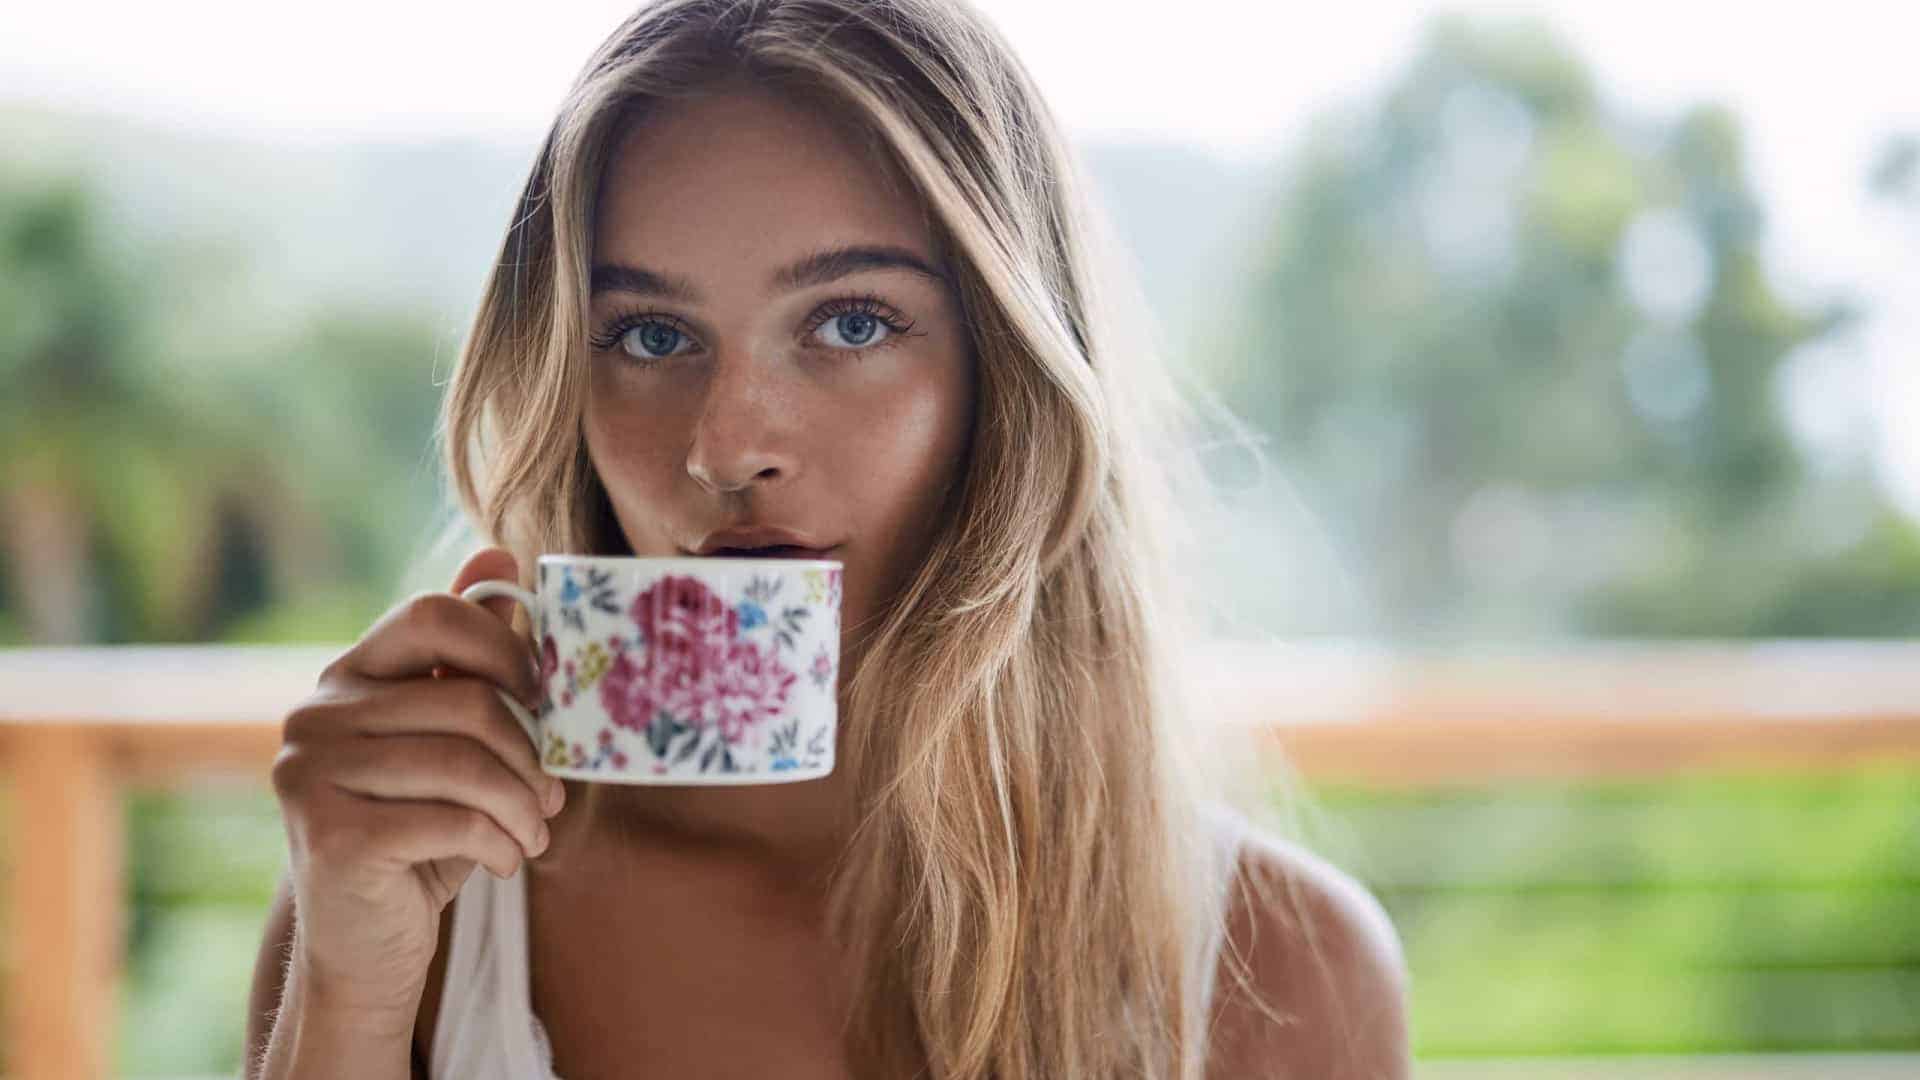 Por quanto tempo posso tomar chá sem prejudicar a saúde?